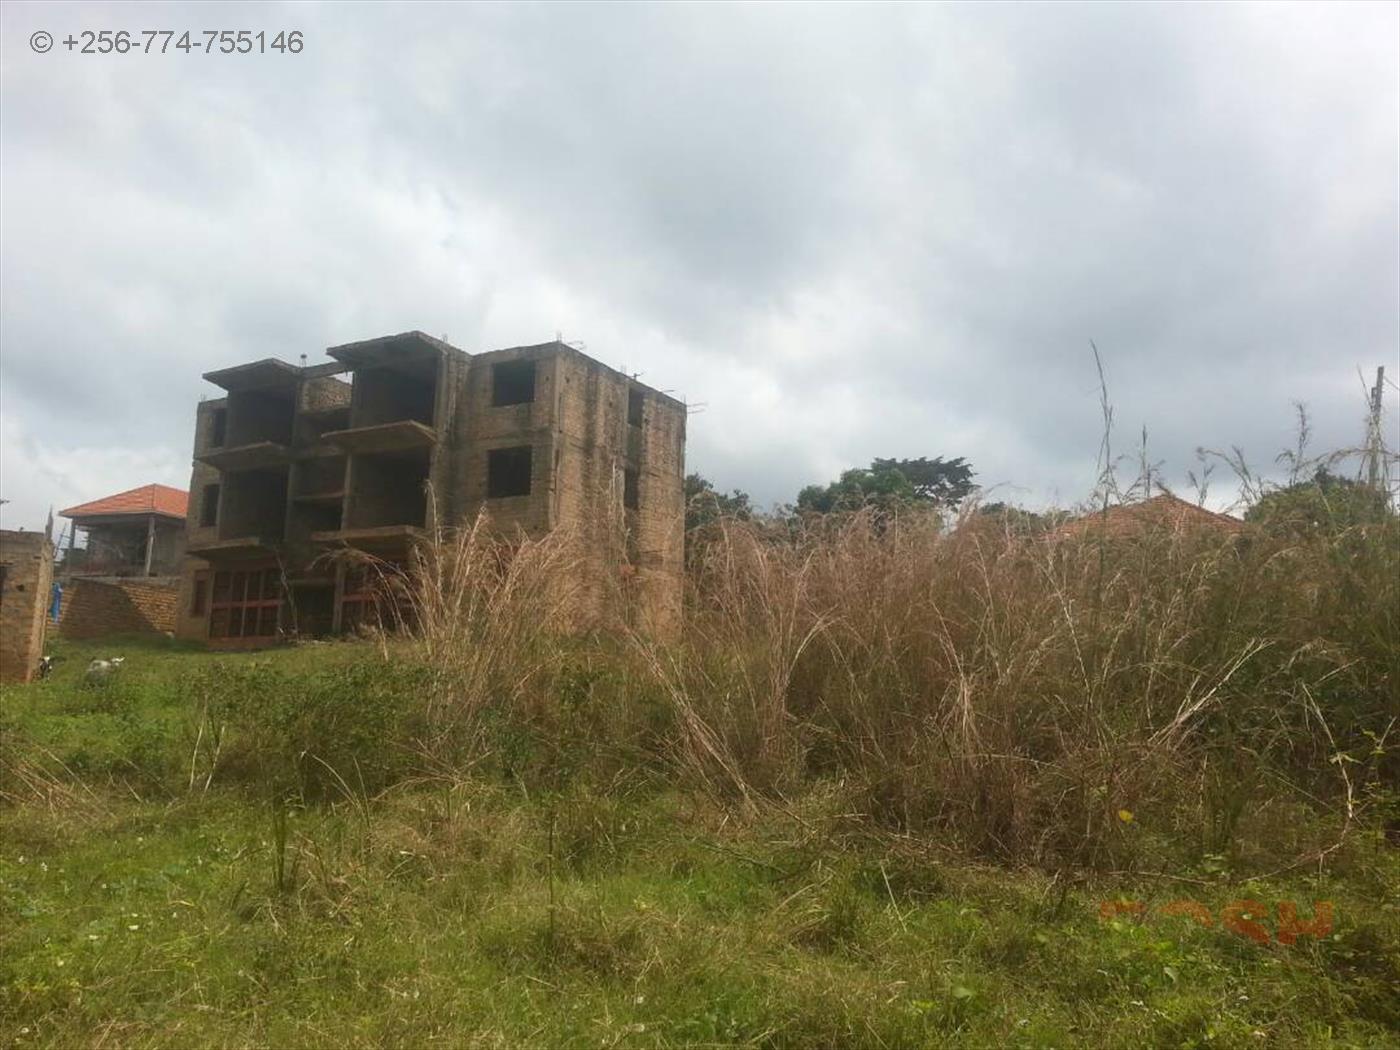 Apartment block for sale in Namugongo Wakiso